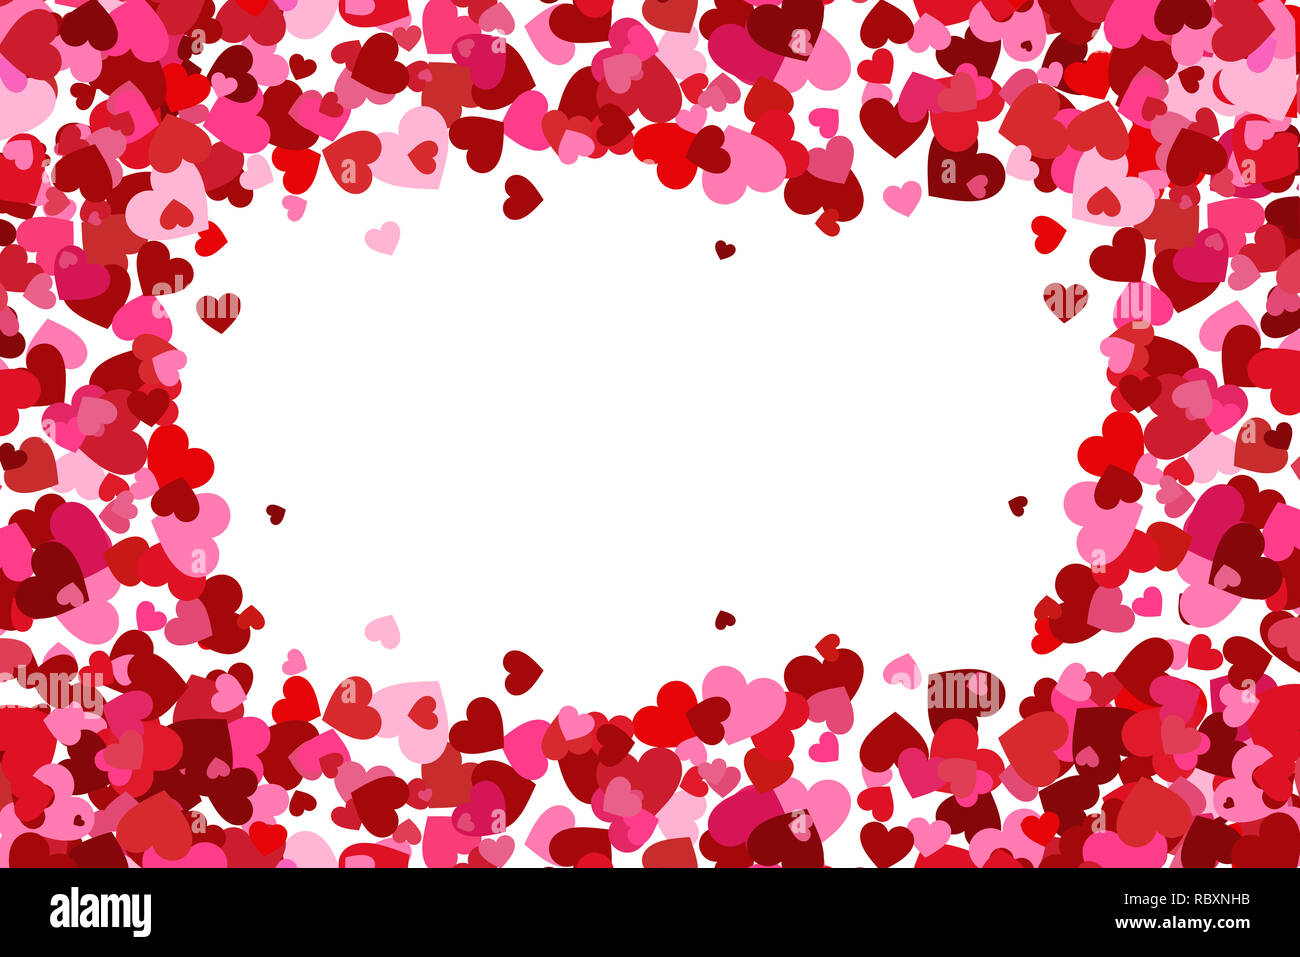 Nghìn trái tim bay lơ lửng trên hình nền Flying heart confetti sẽ mang đến cho bạn một cái nhìn thật ấn tượng và lãng mạn. Hãy cho trái tim của bạn bay nhiều hơn trong ngày Valentine sắp tới.